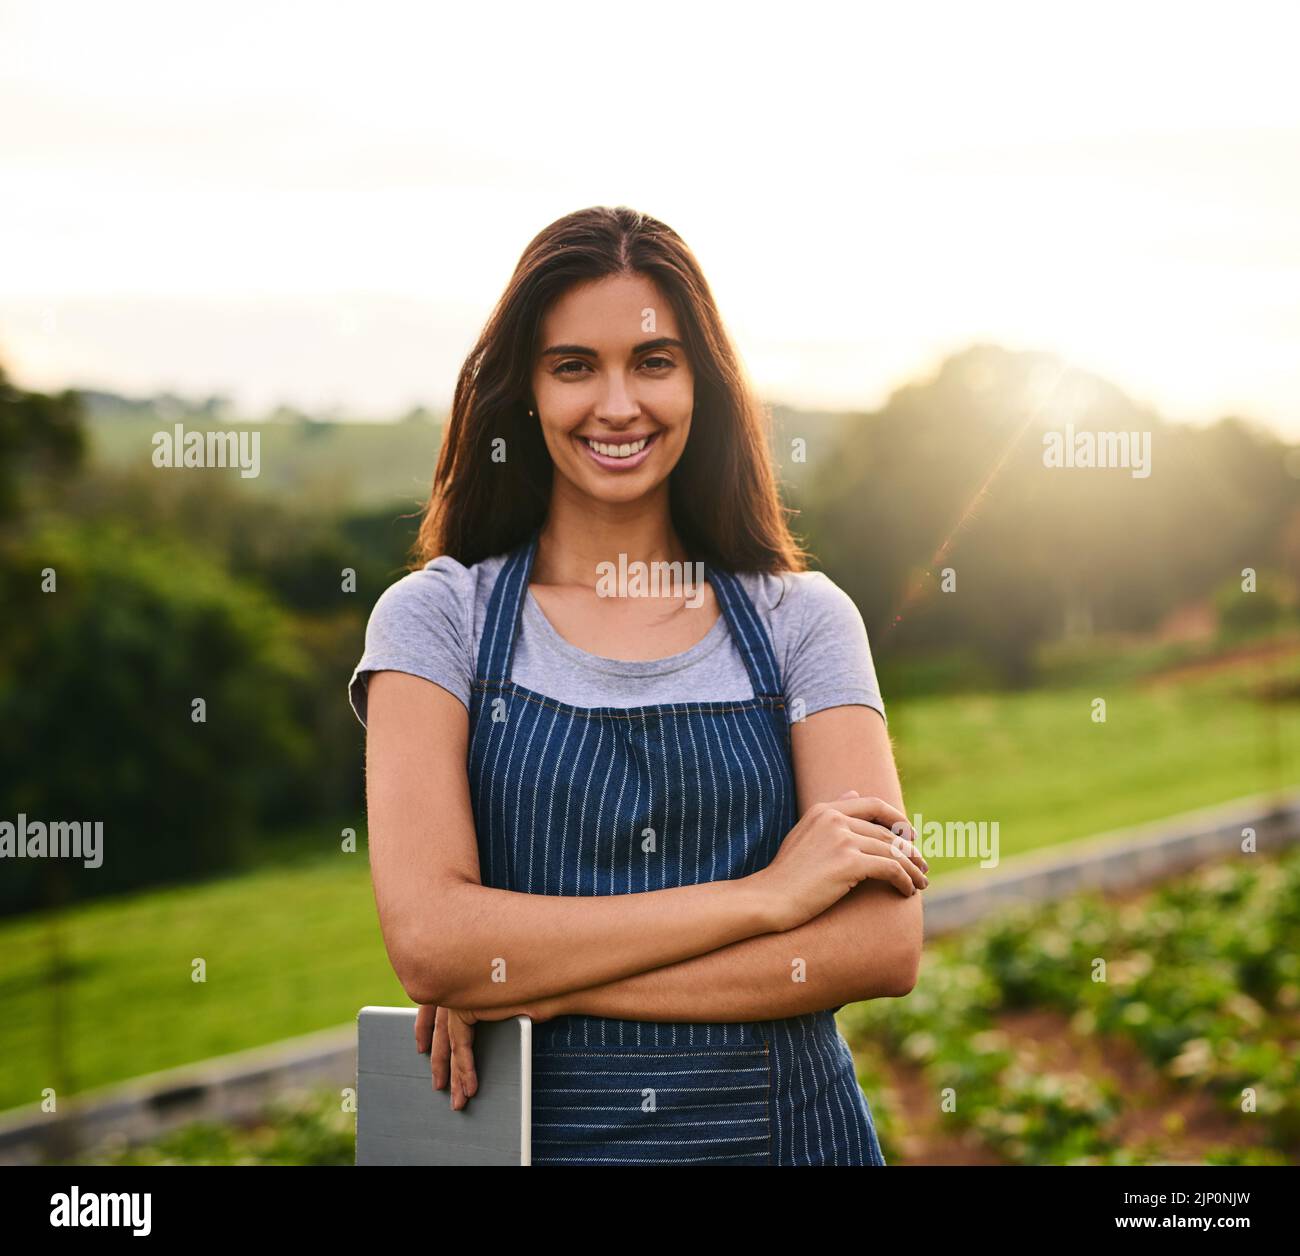 Je suis en train de diriger une ferme florissante. Portrait court d'une jeune femme attrayante debout avec ses bras pliés sur sa ferme. Banque D'Images